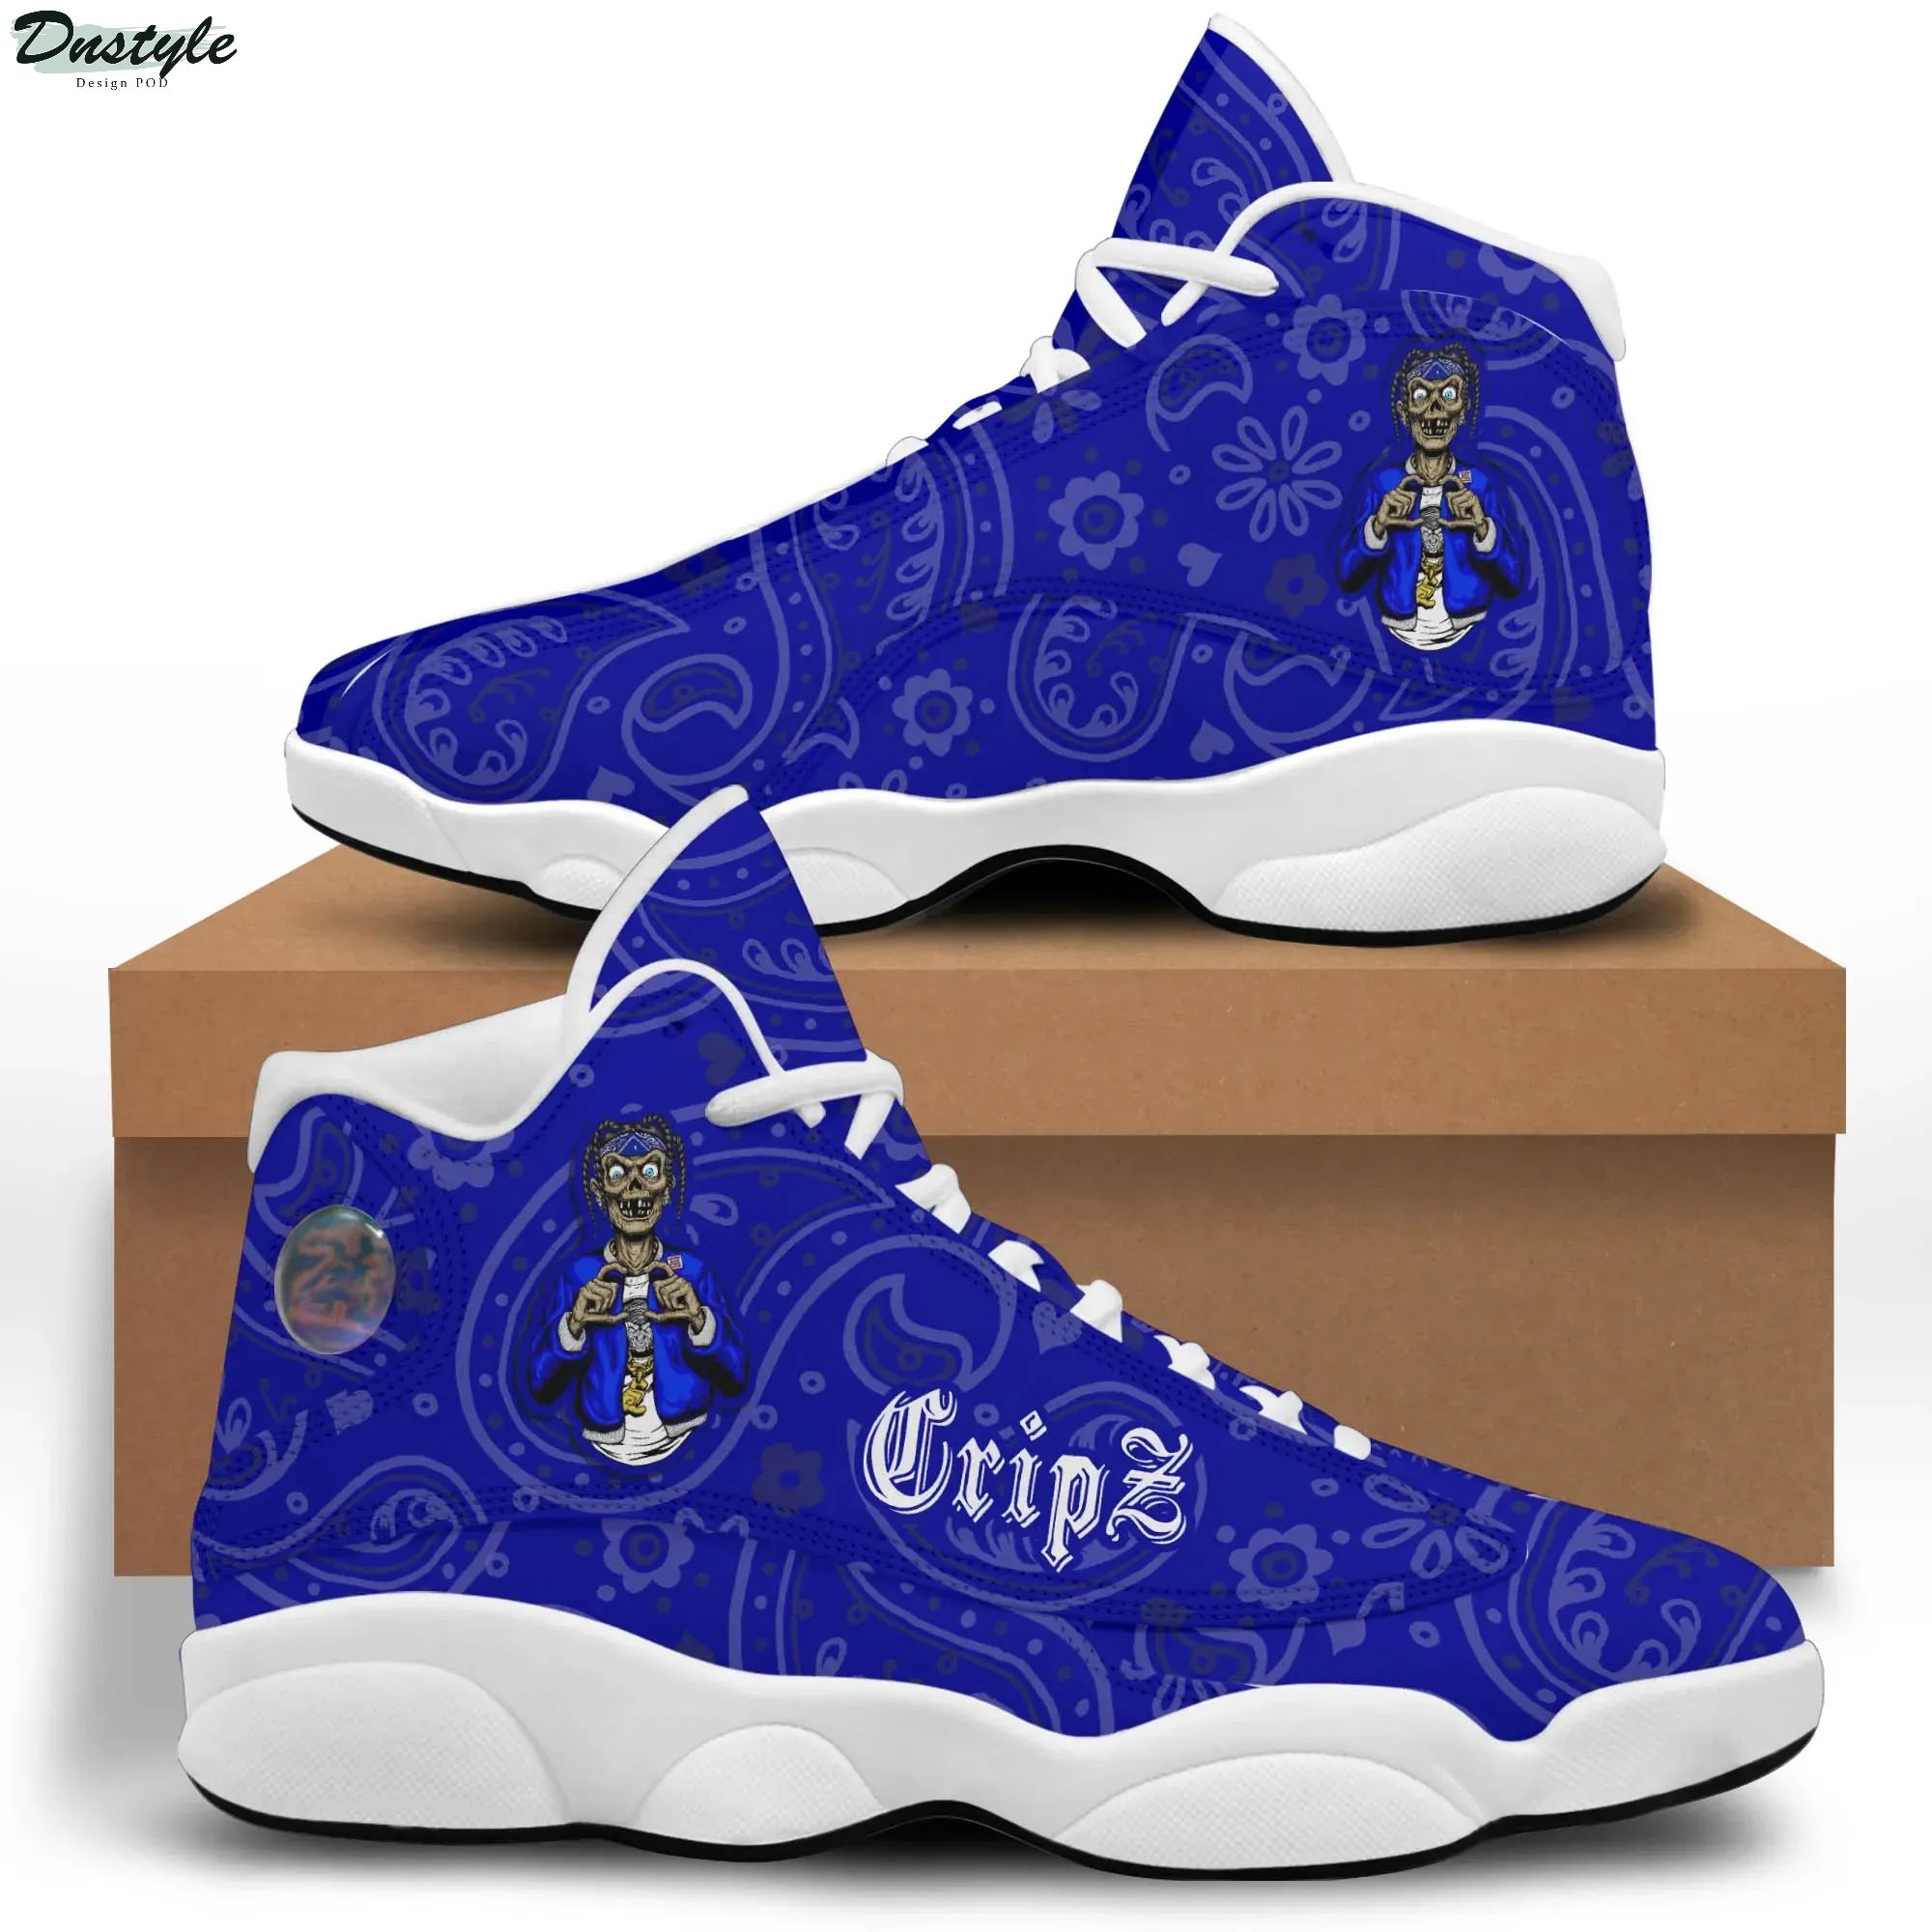 Crips Gang Air Jordan 13 Sneakers